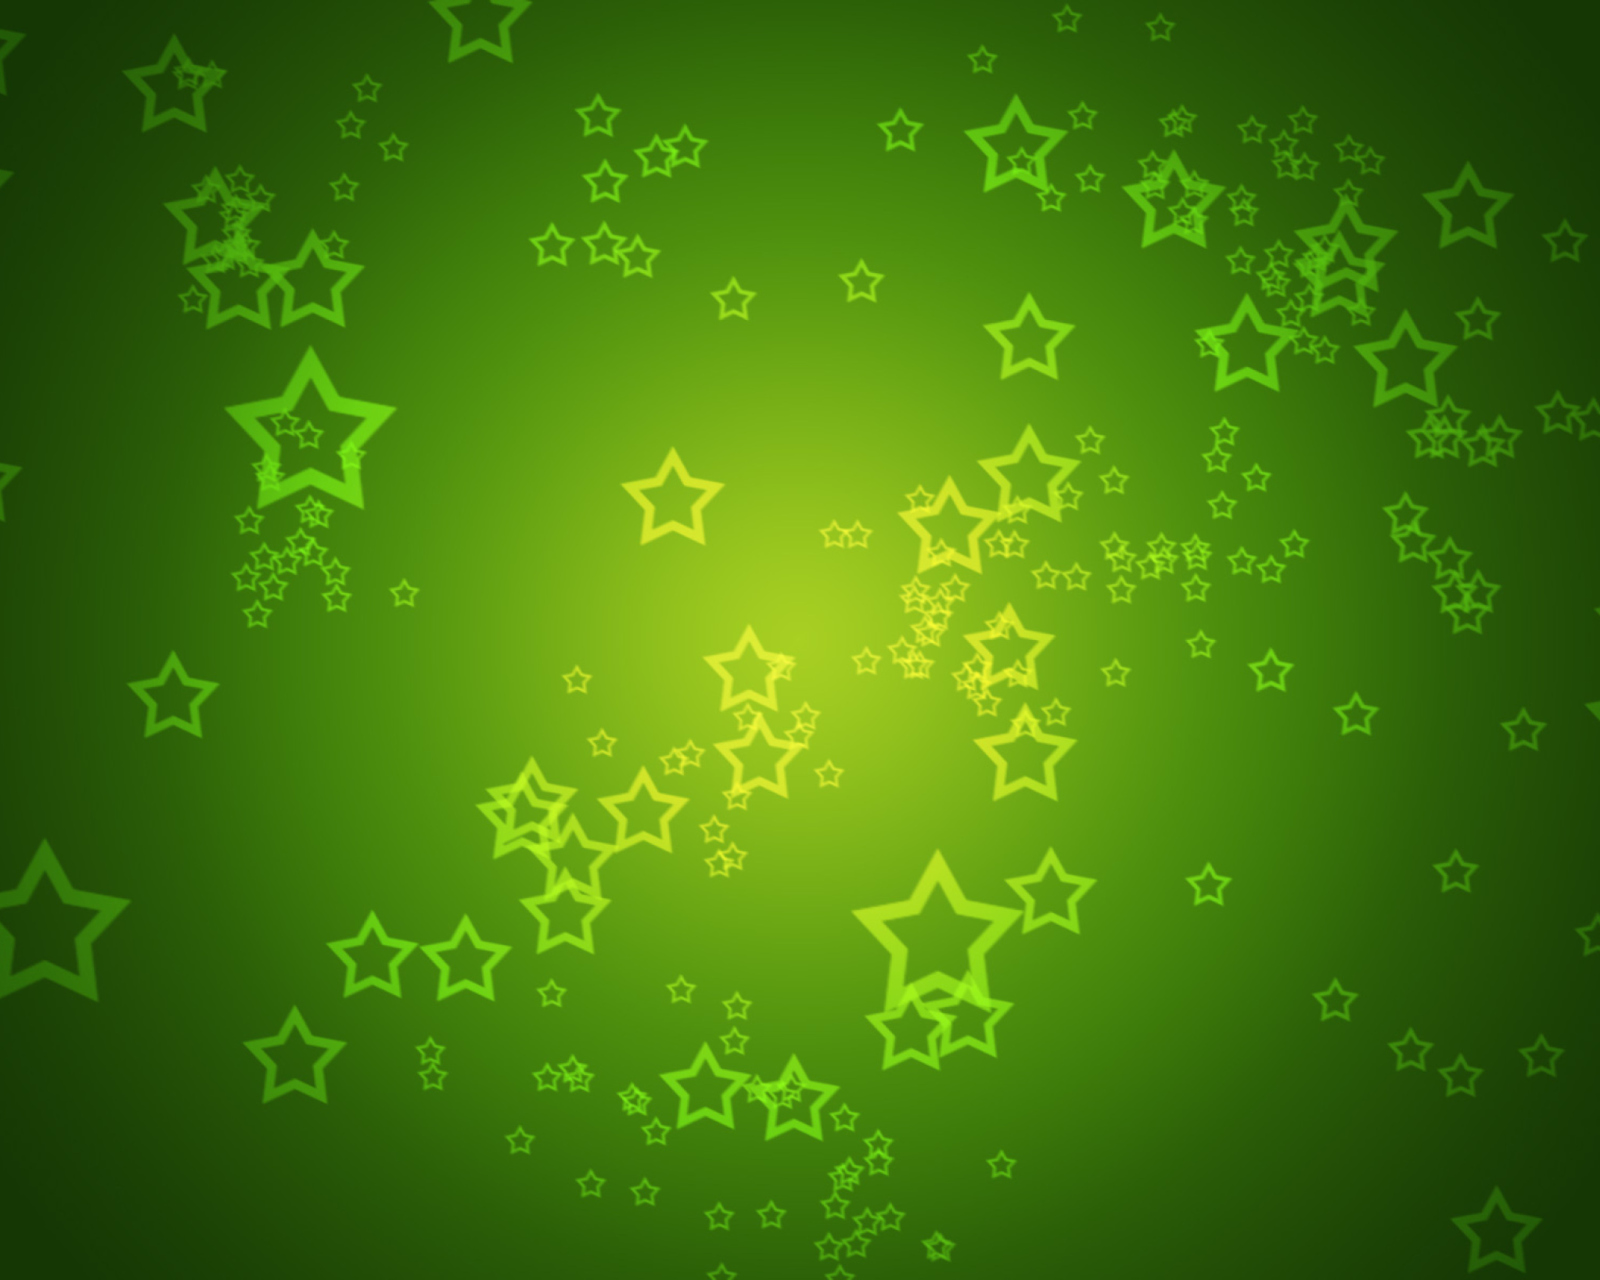 Das Green Stars Wallpaper 1600x1280